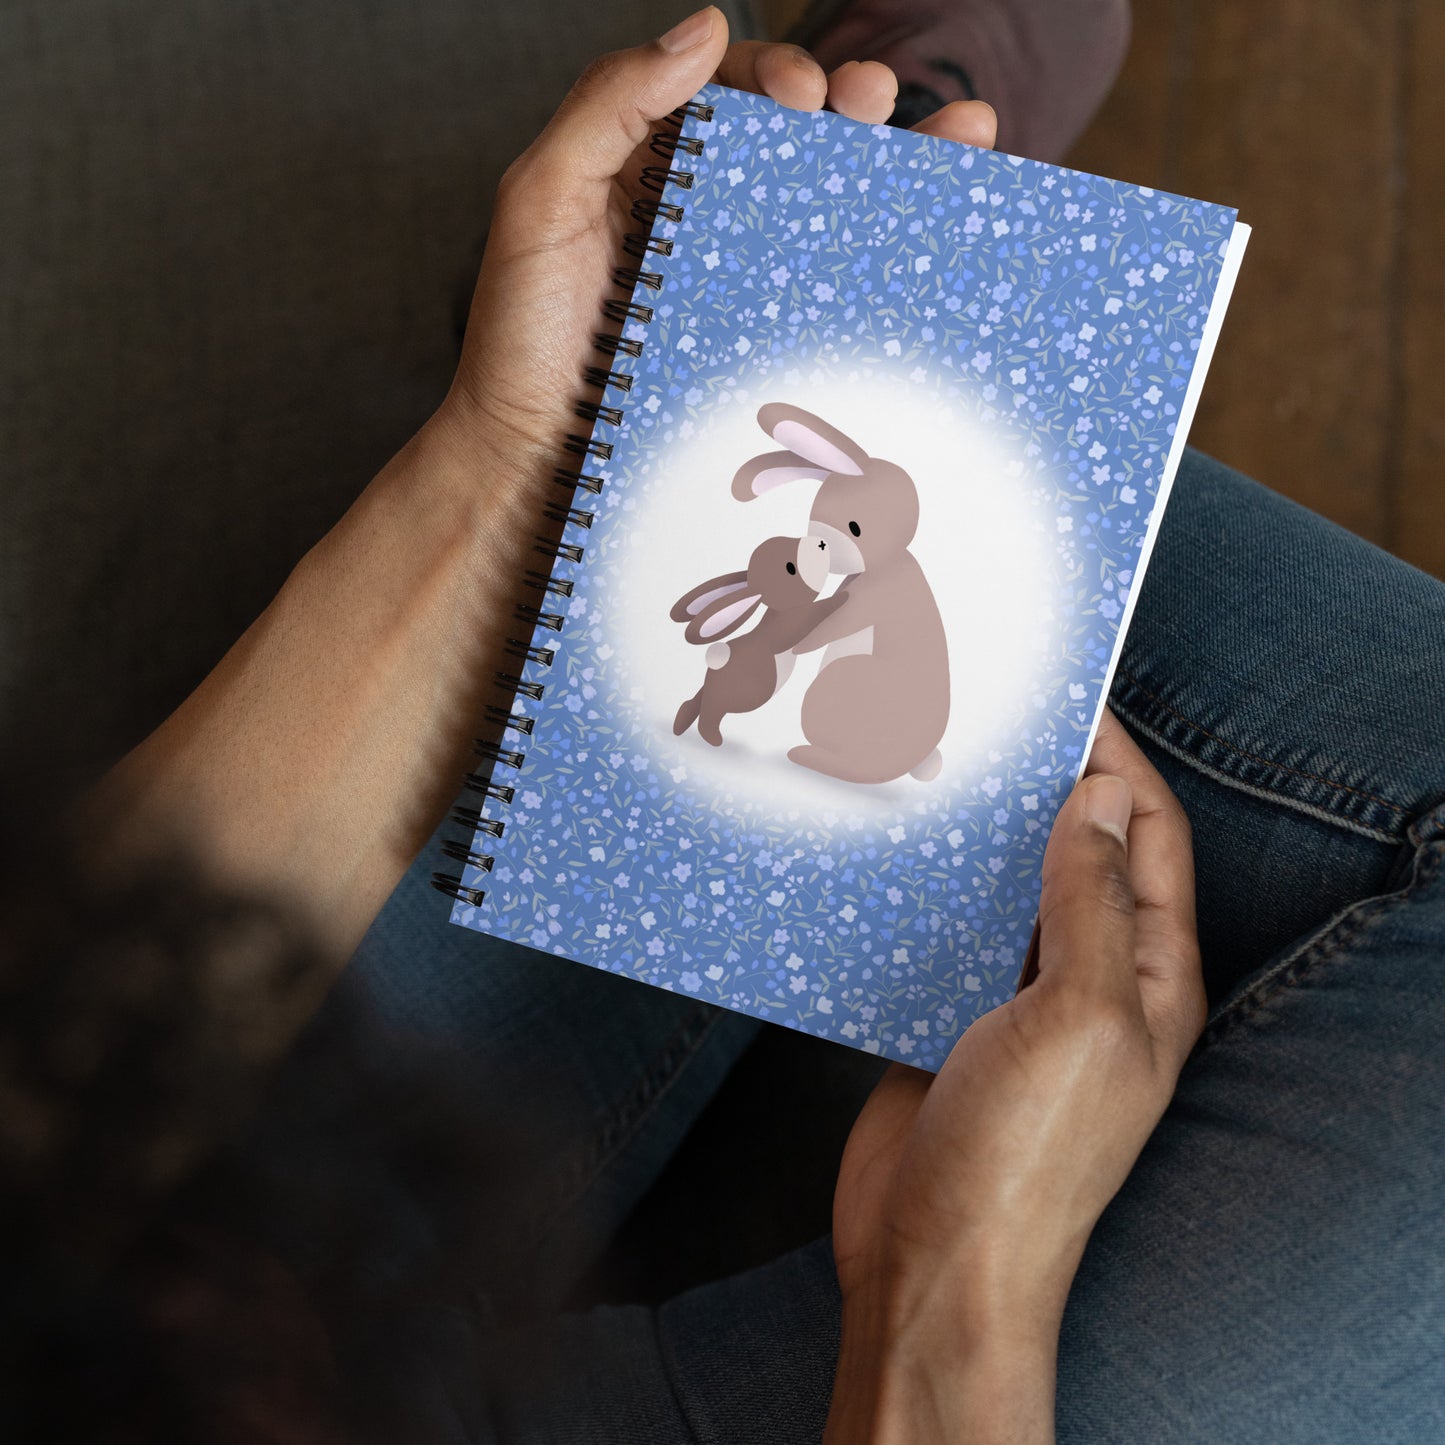 A Mother’s Love Bunnies Notebook